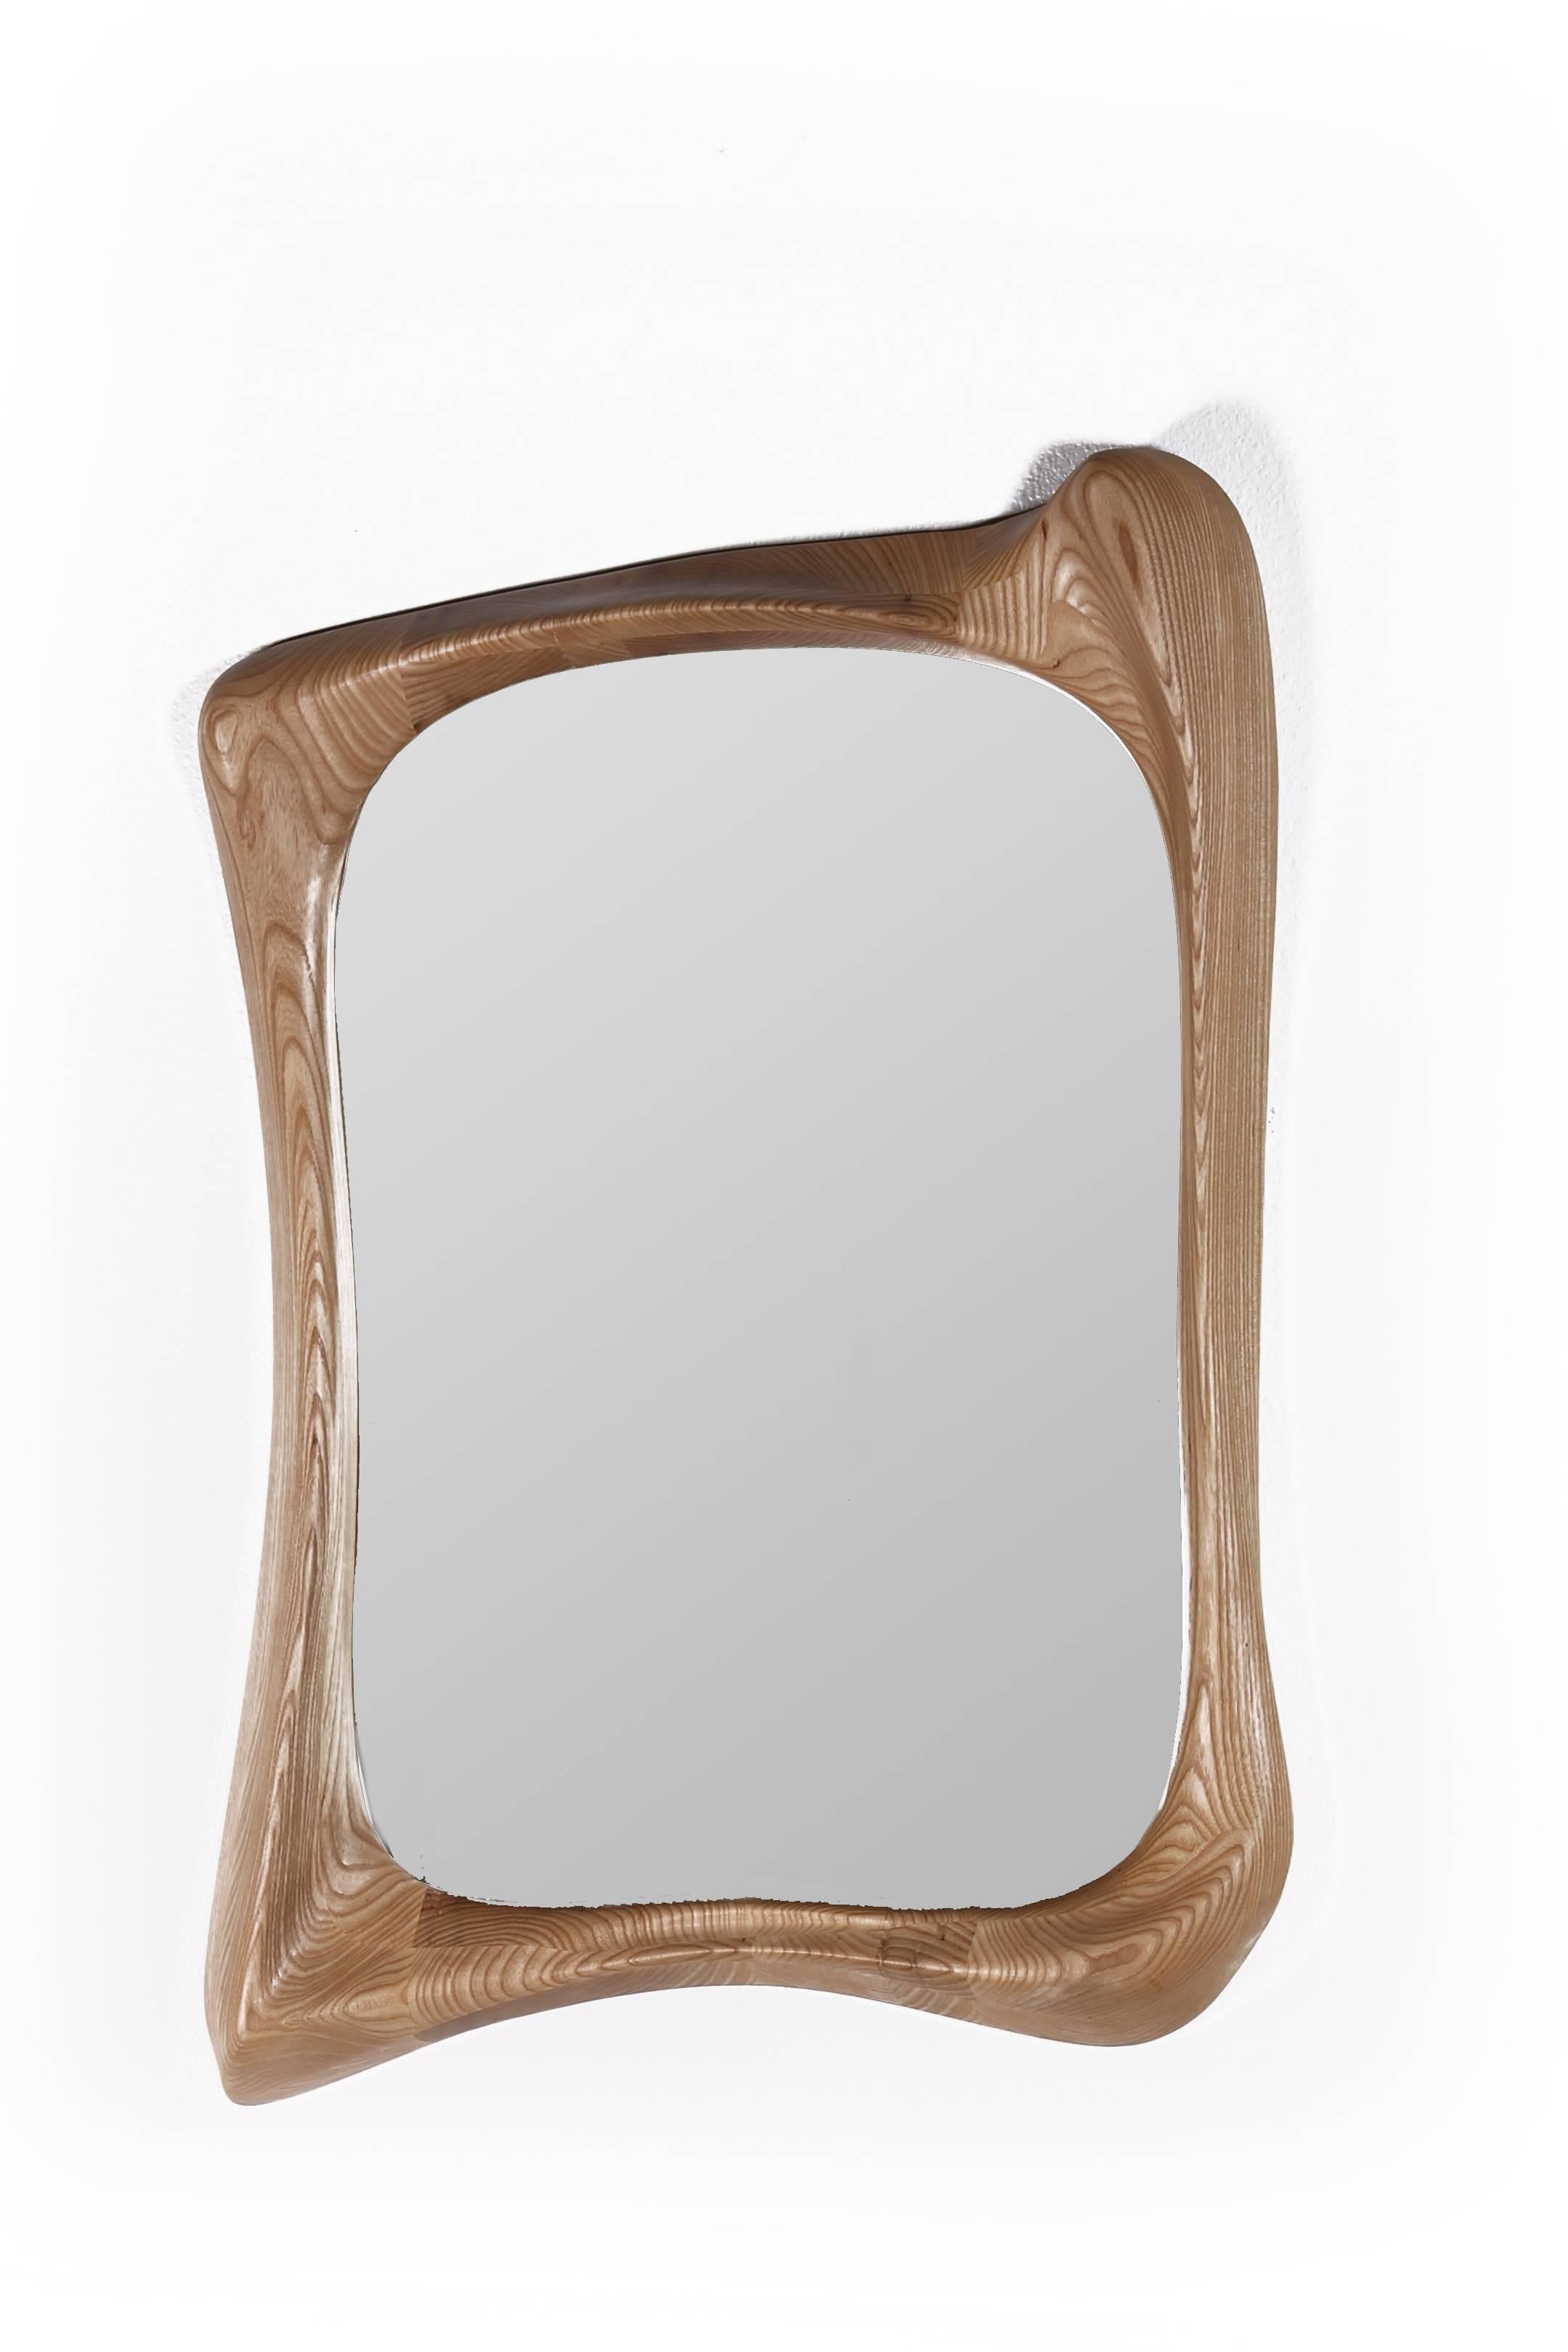 Der Spiegel Narcissus ist ein stilvoller, futuristischer, skulpturaler Kunstspiegelrahmen mit einer dynamischen Form. Narcissus ist aus massivem Eschenholz mit natürlich gebeizter Oberfläche gefertigt. Von Natur aus unterscheidet sich die Maserung